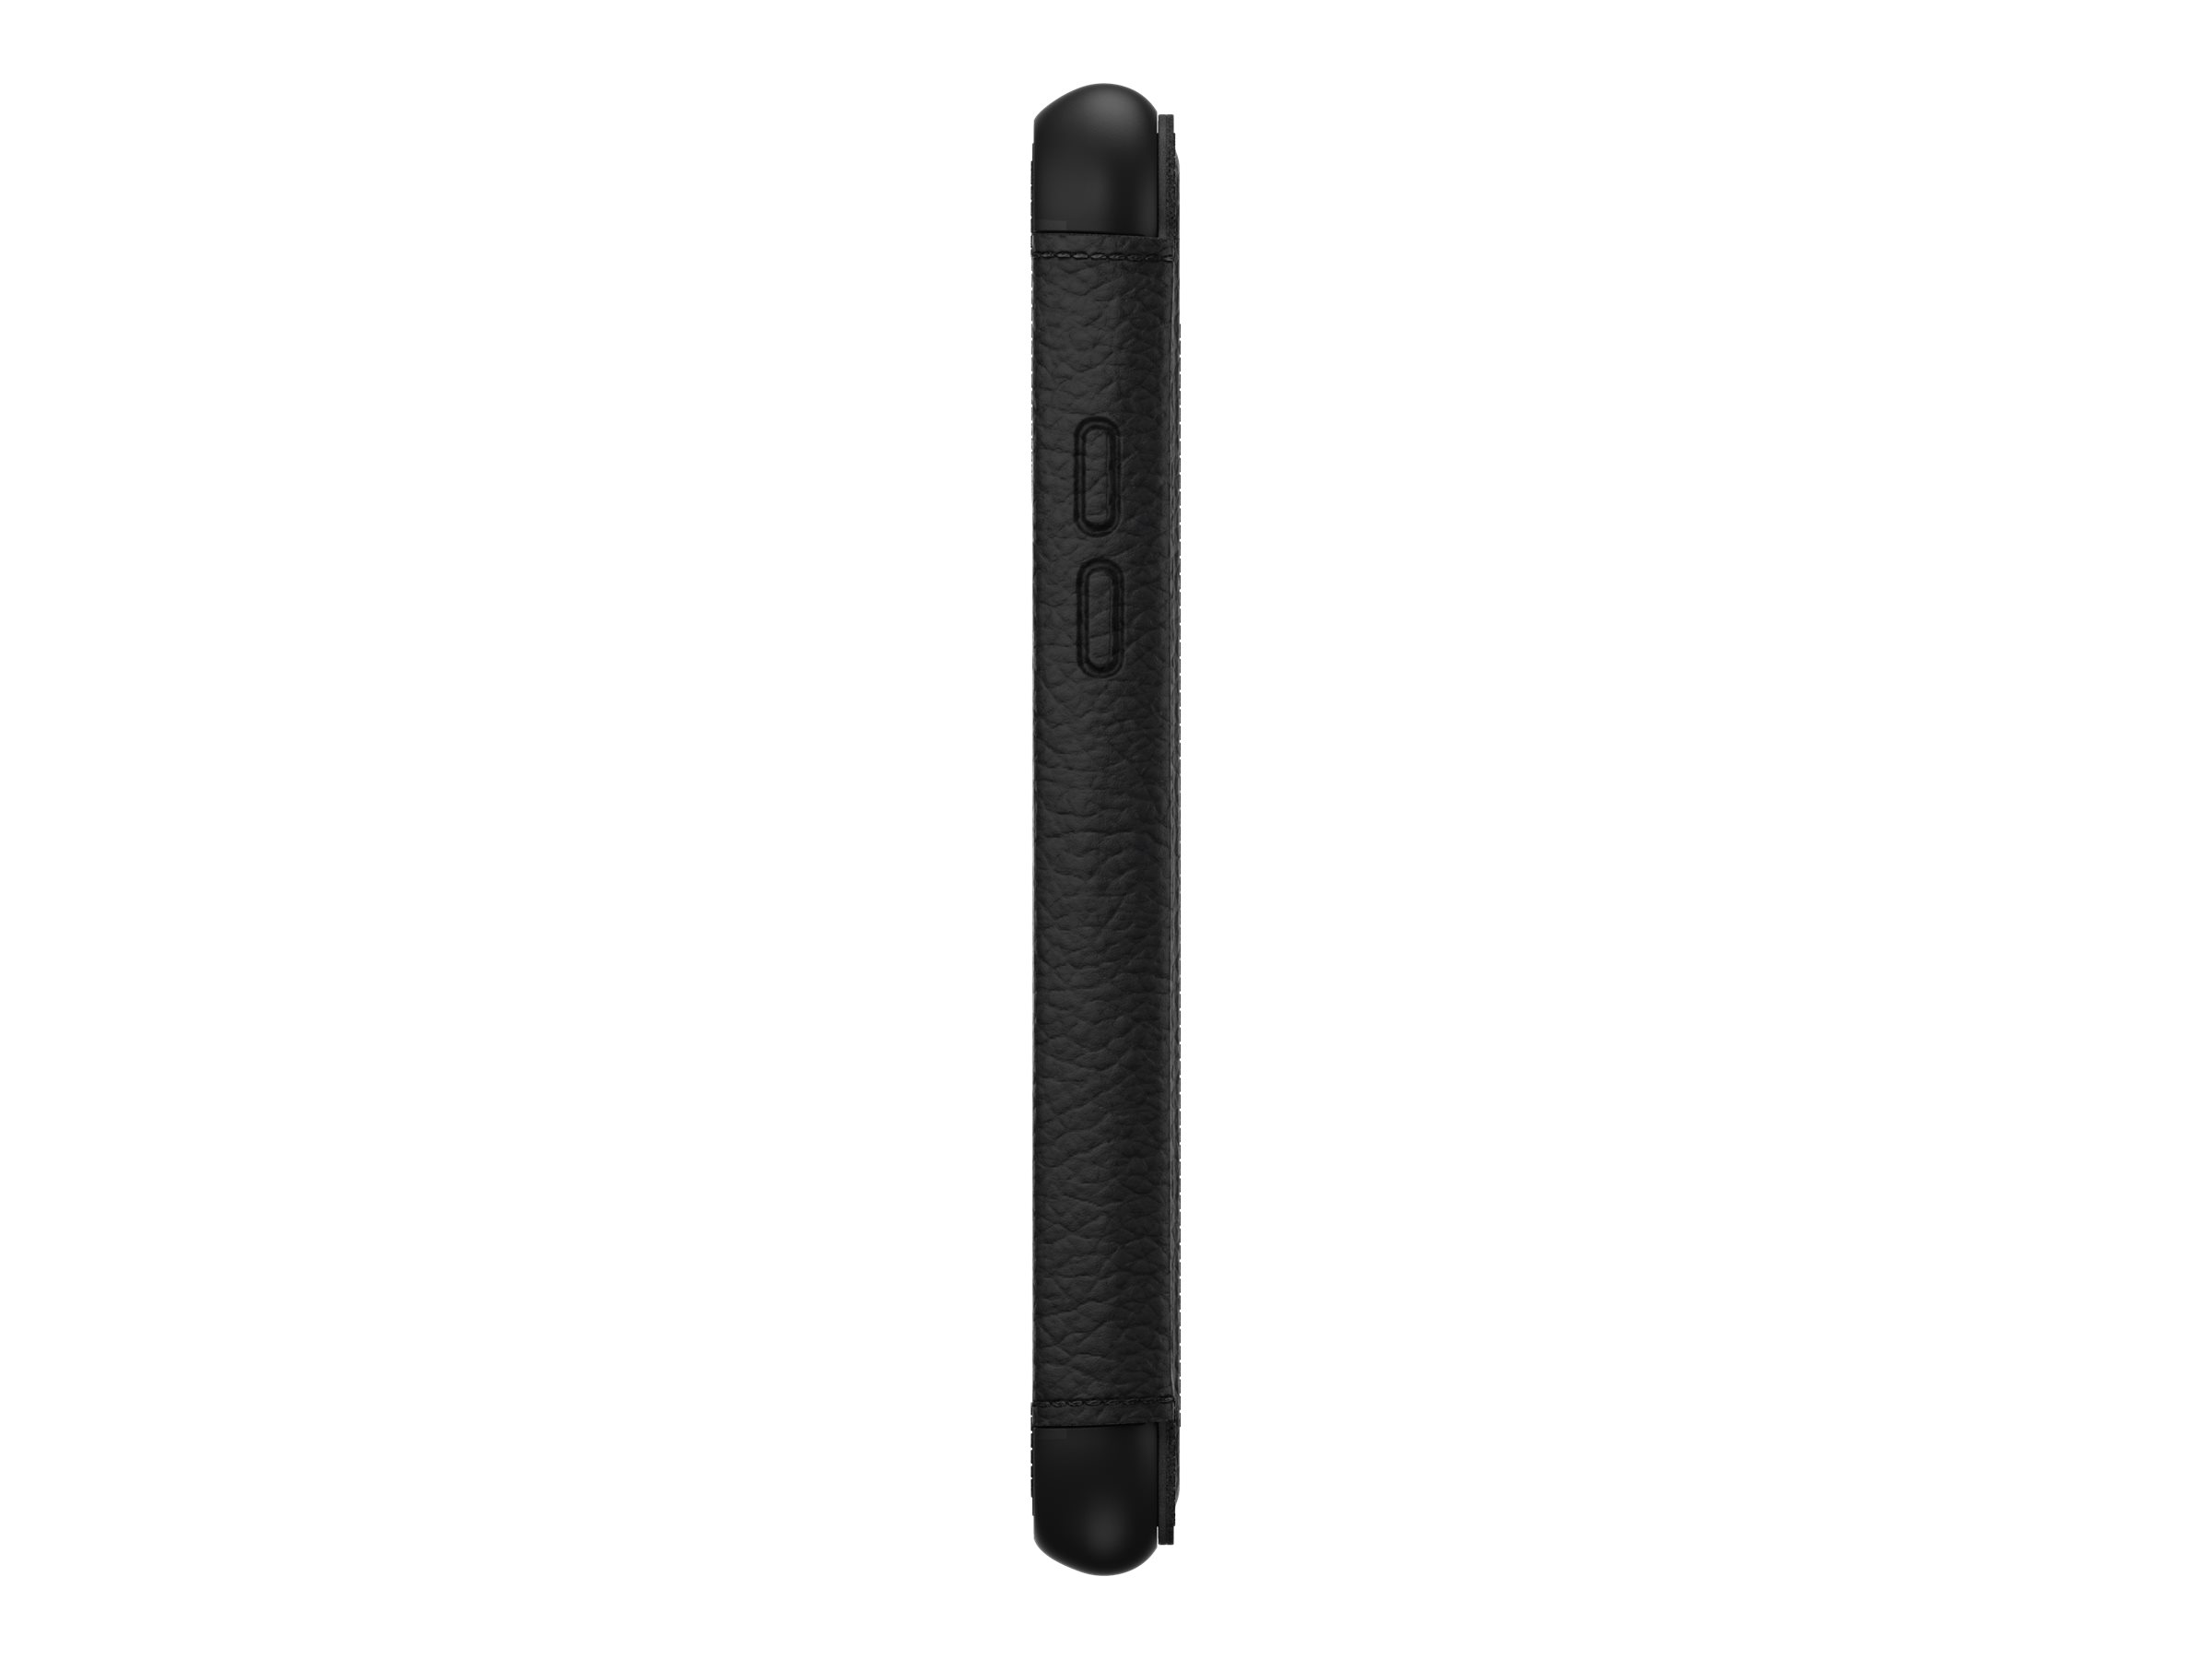 OtterBox Strada Series - Étui à rabat pour téléphone portable - cuir, polycarbonate - noir ombré - pour Apple iPhone 11 - 77-80248 - Coques et étuis pour téléphone portable